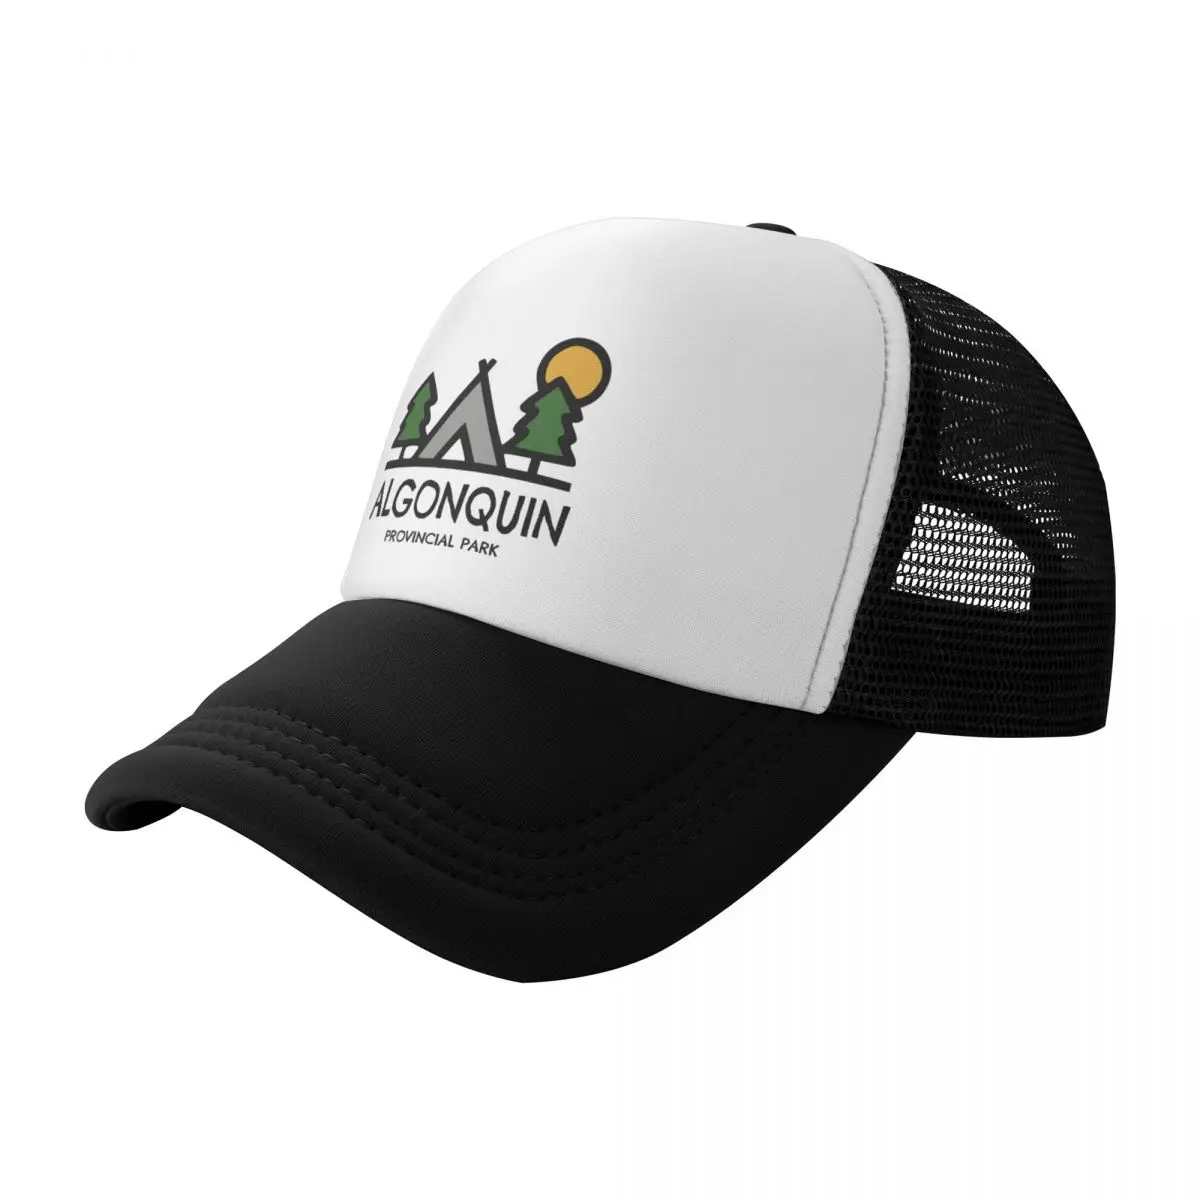 

Algonquin Provincial Park Baseball Cap Cosplay tea Hat Military Tactical Cap Men's Hats Women's